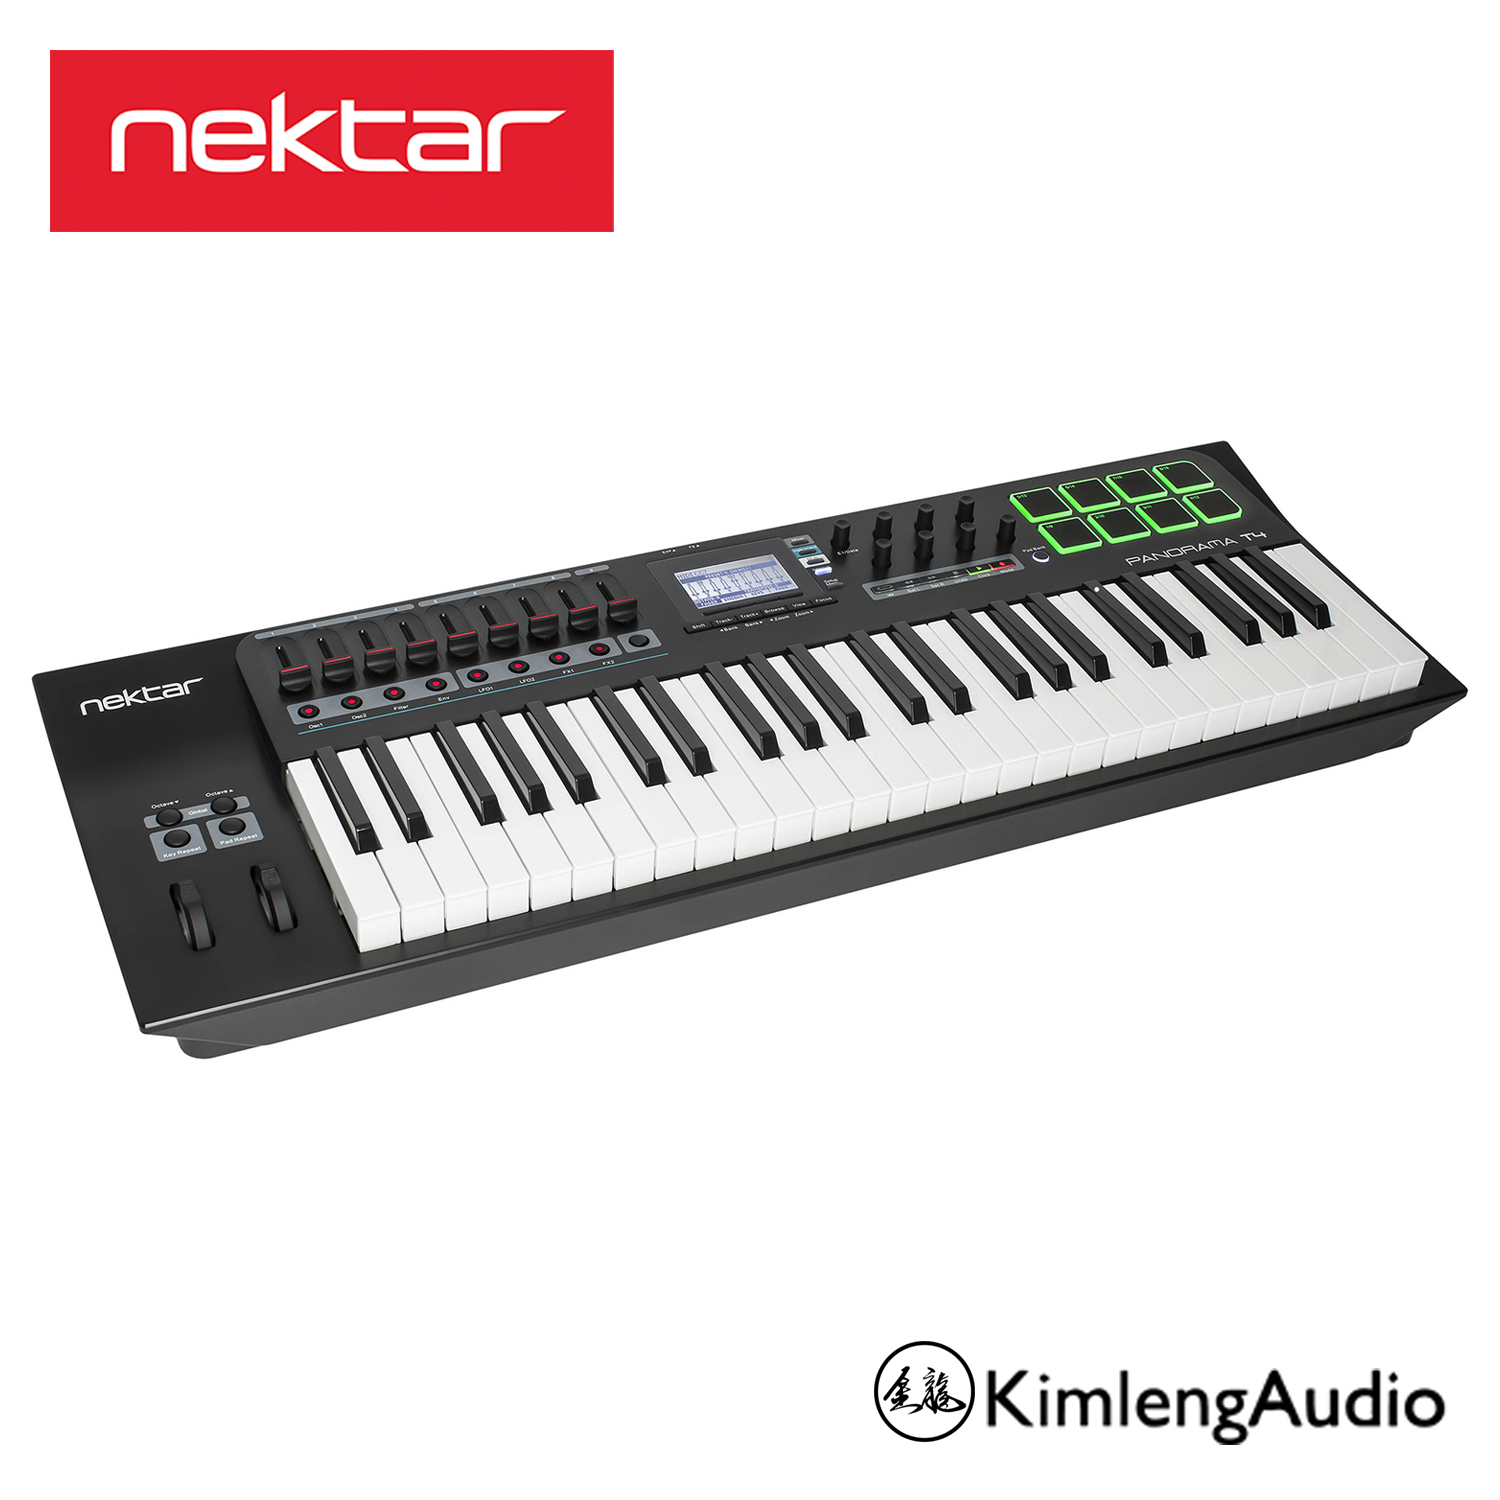 Nektar T4 MIDI Controller 49 คีย์ รุ่นใหม่ล่าสุด พร้อมฟังชั่นครบครัน